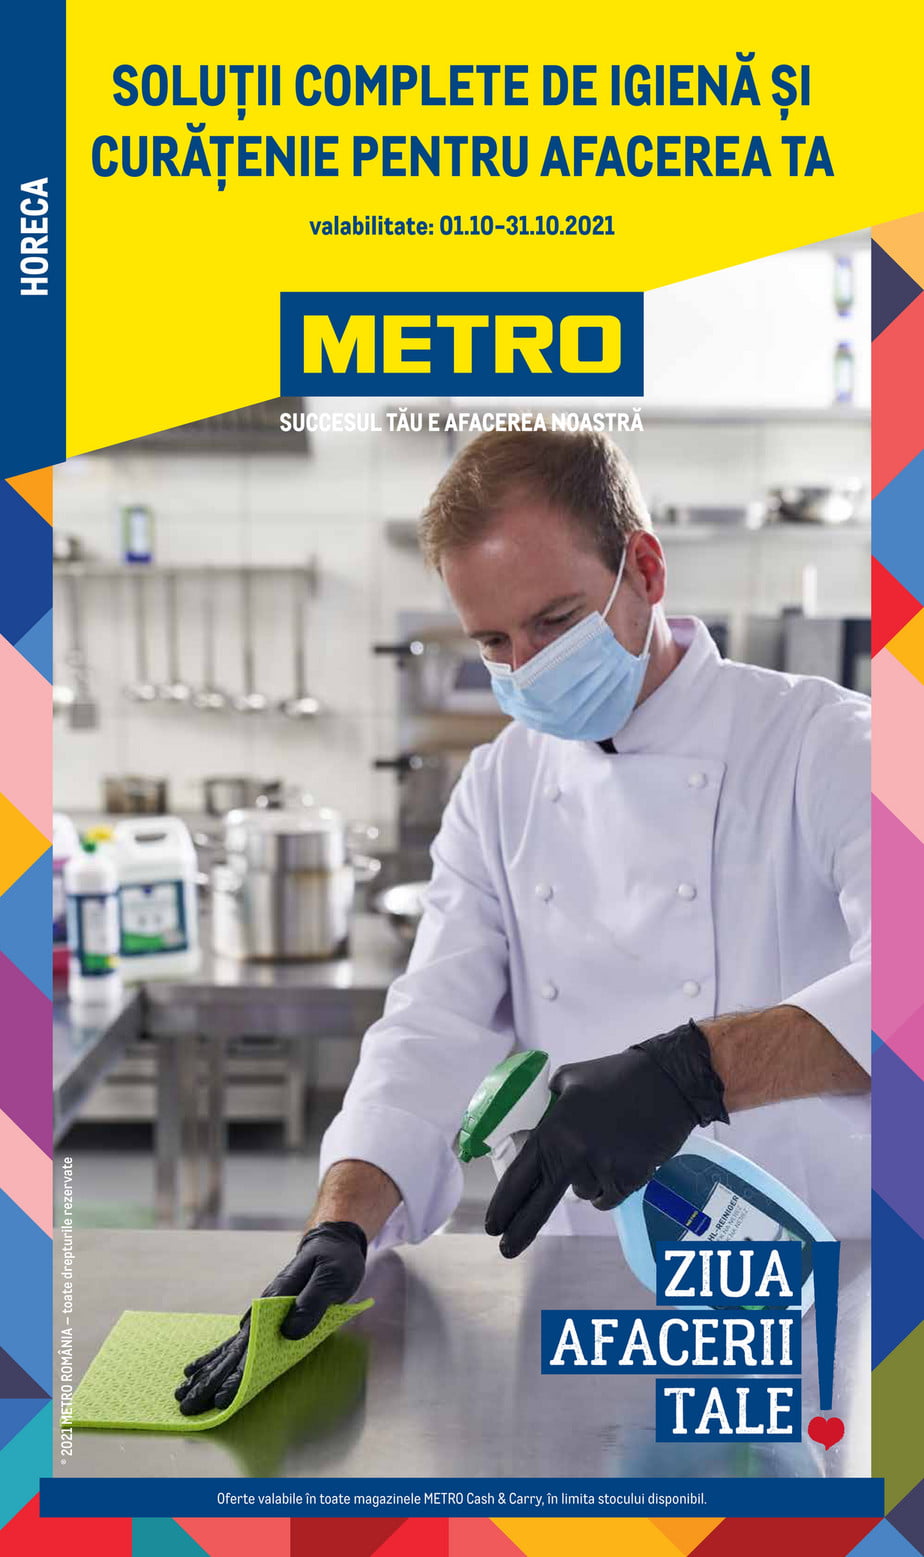 Catalog Metro 1 octombrie - 31 octombrie 2021 Ziua Afacerii Tale - Solutii complete de igiena si curatenie pentru afacerea ta